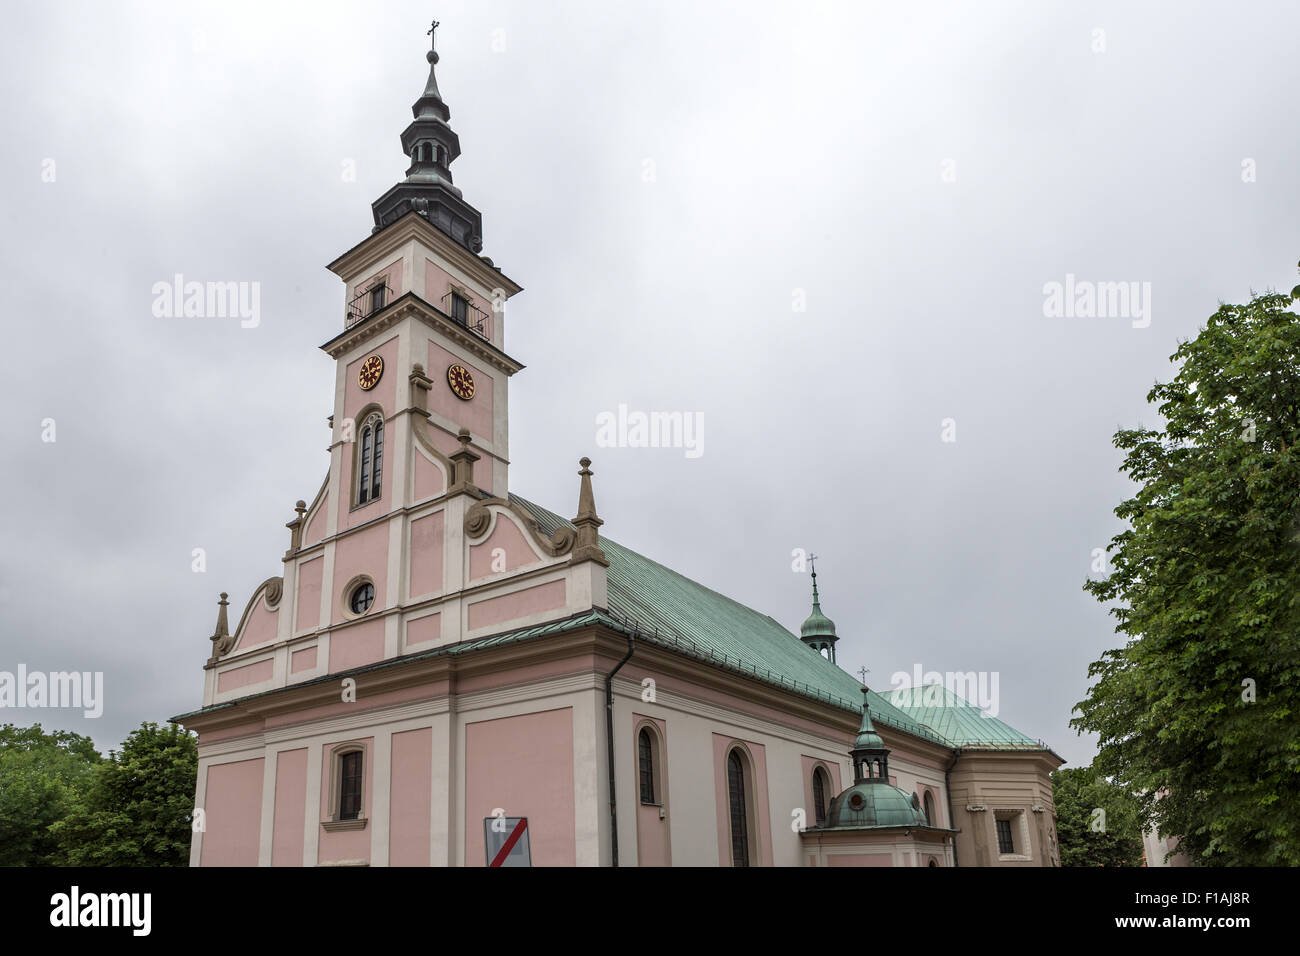 Church, Szyb Regis, Wieliczka Salt Mine, Kopalnia Soli, near Krakow, Poland Stock Photo